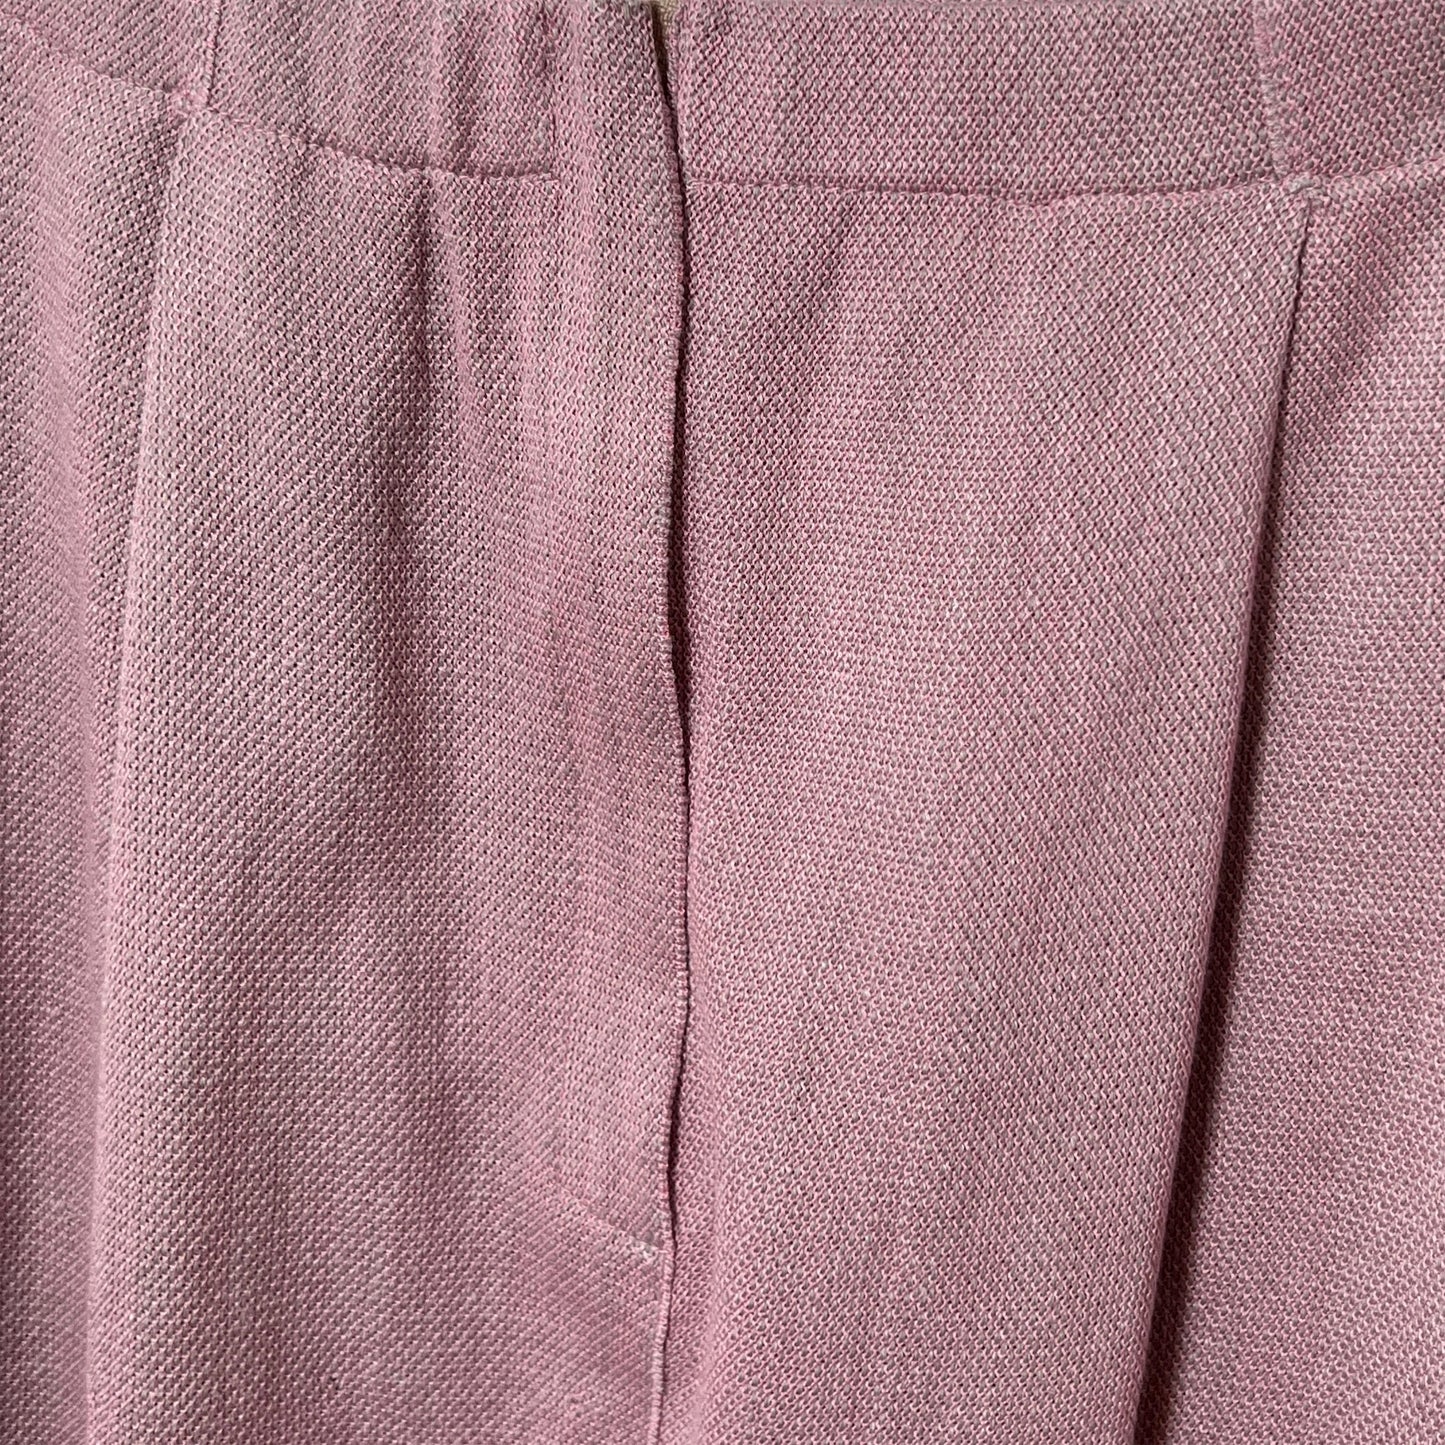 【マルト・デムラン セレクト ファッション】ロングスカートピンク